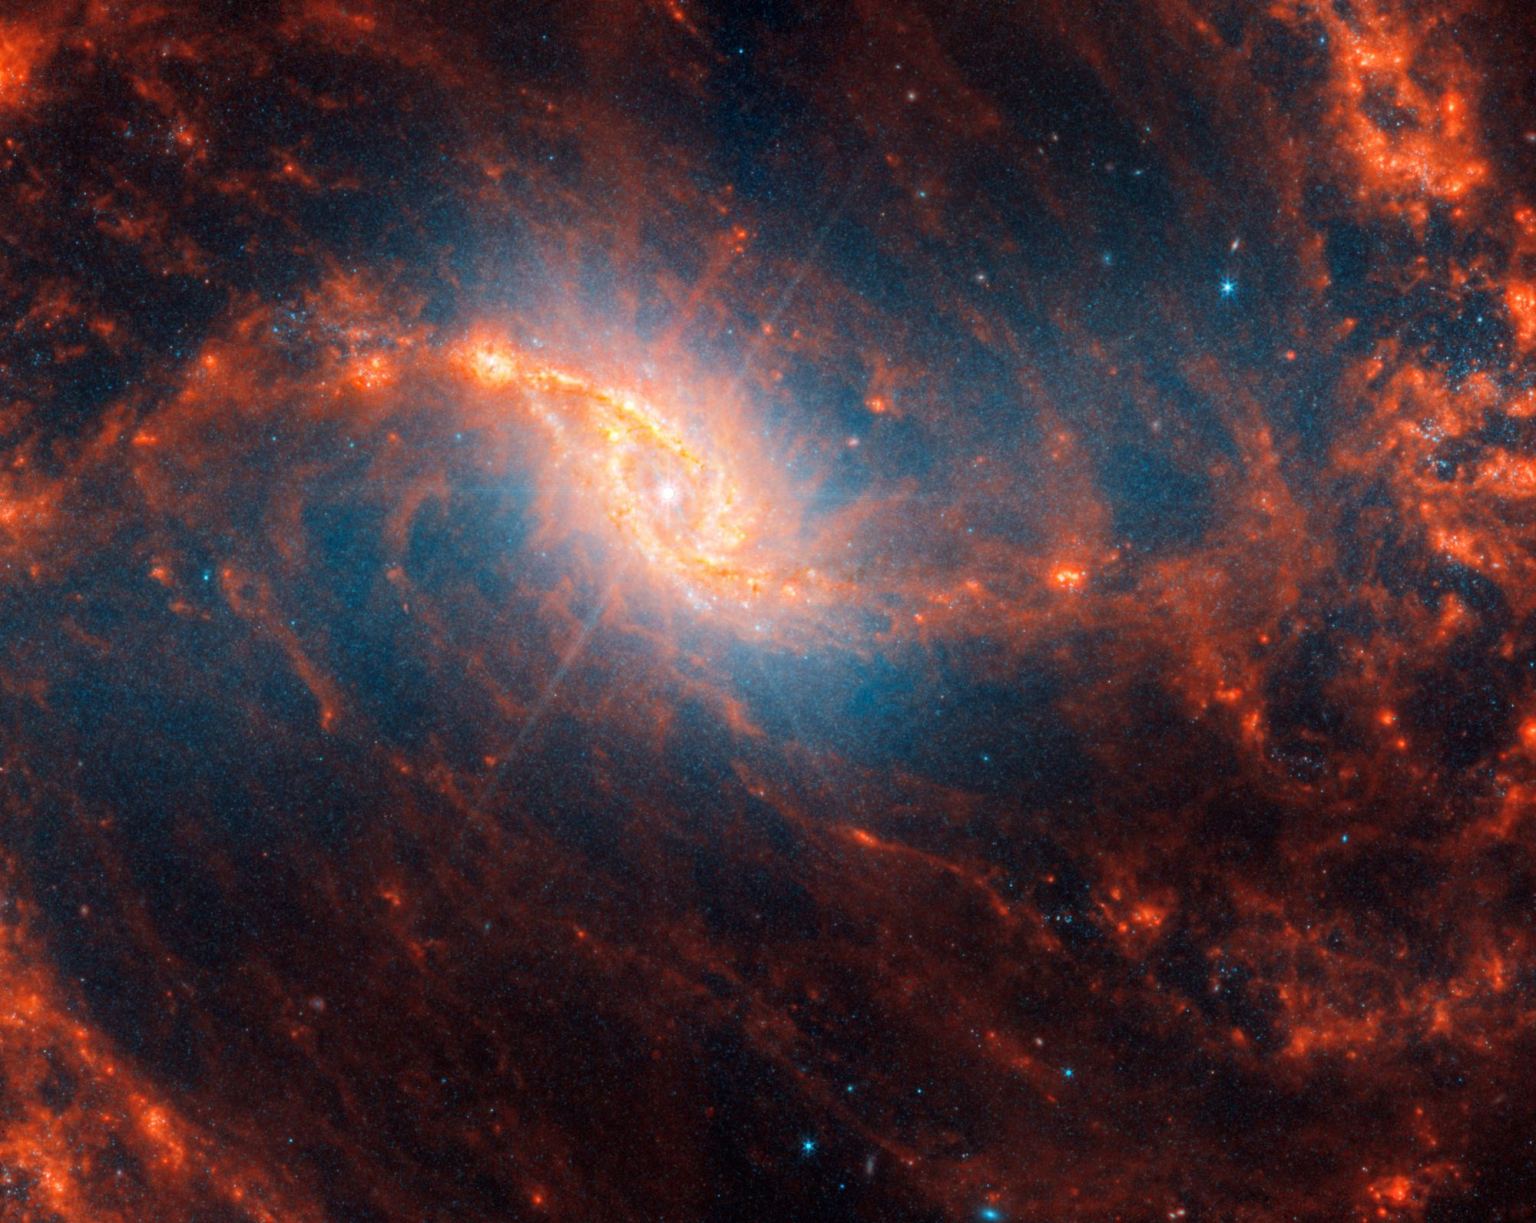 Detalles centrales de la galaxia espiral con destellos en la lente como picos en el centro